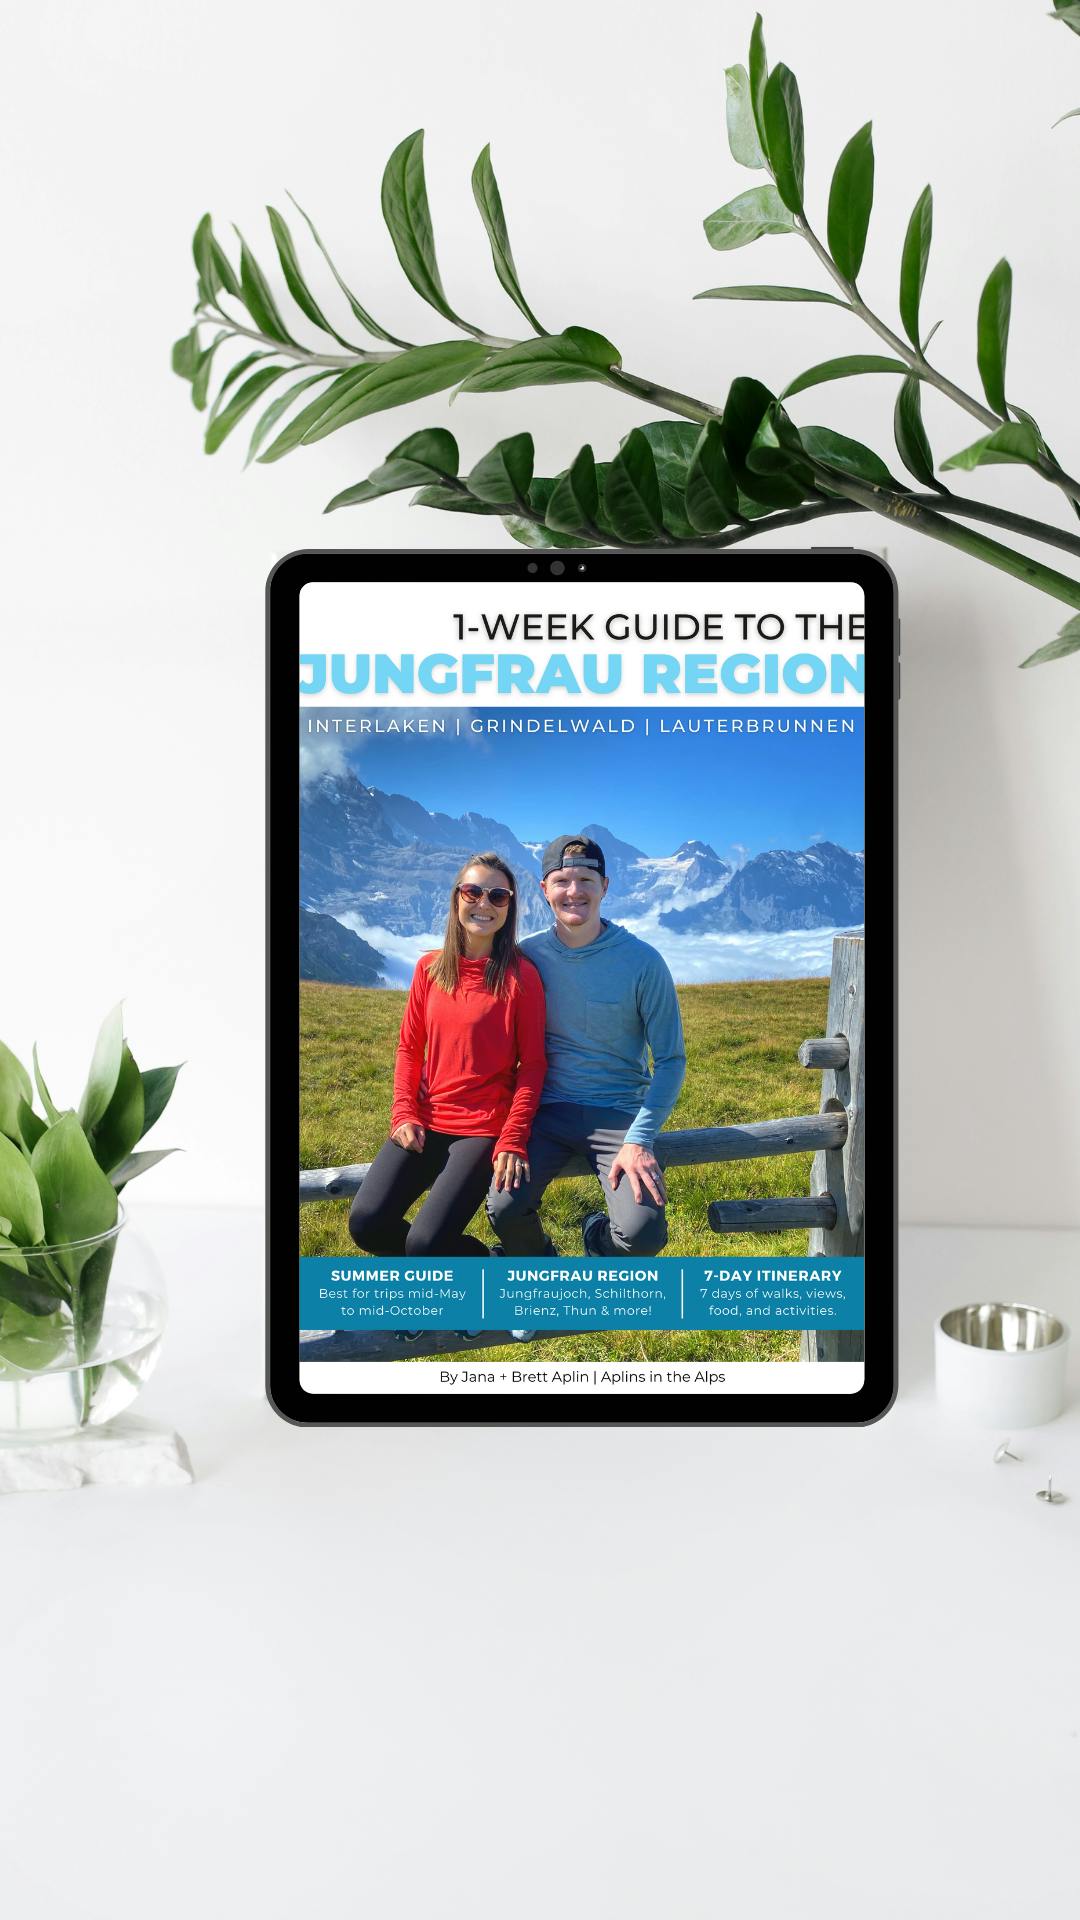 1-Week Guide to the Jungfrau Region